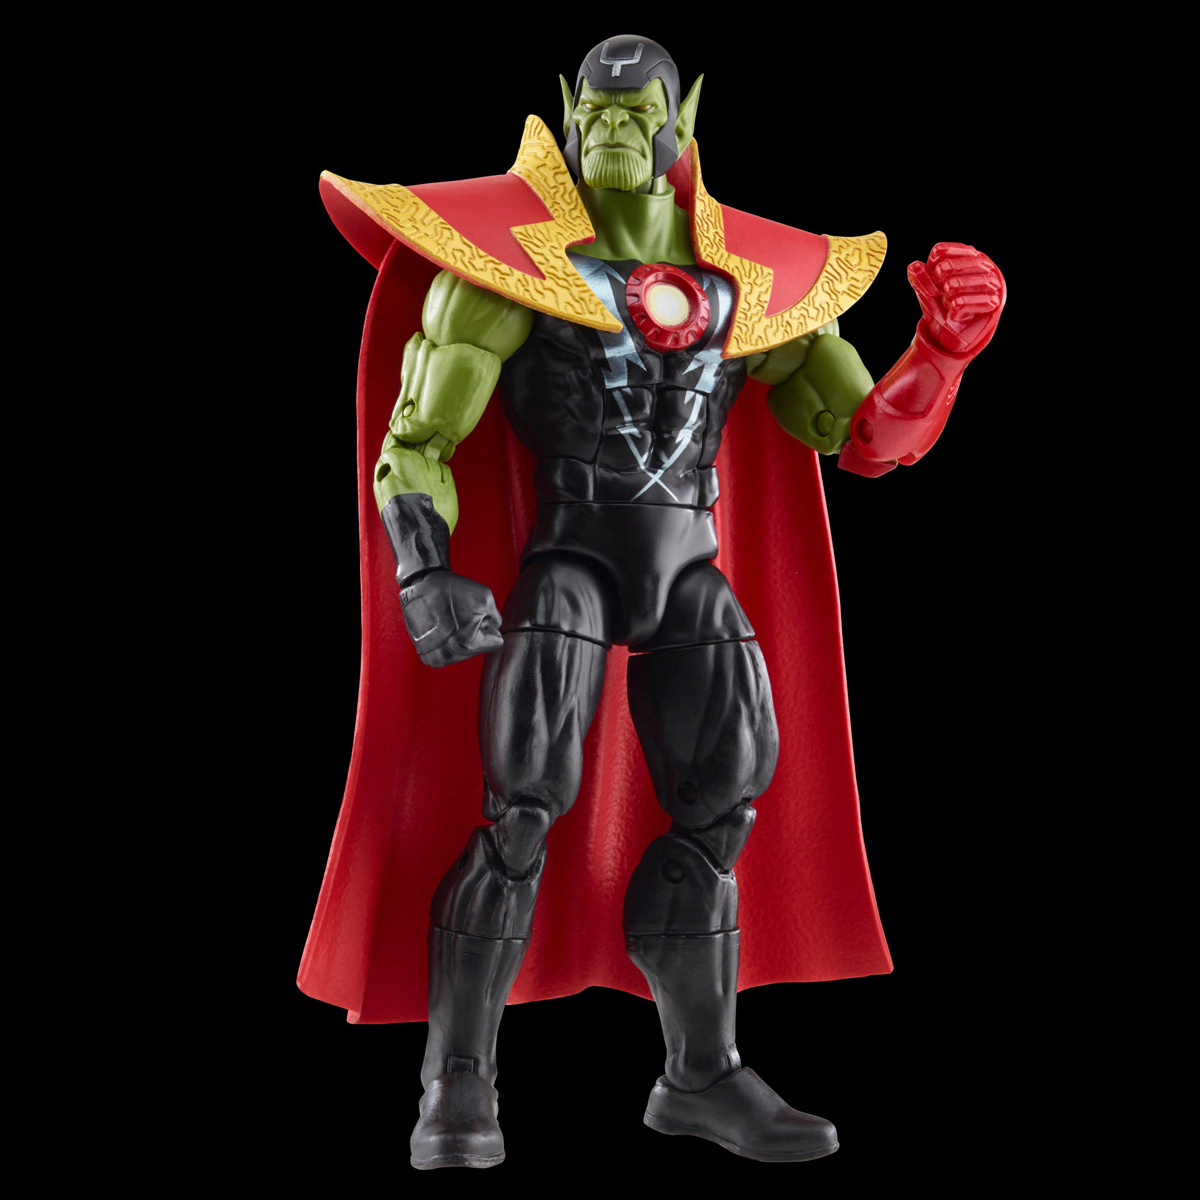 Marvel-Legends-Skrull-Queen-and-Super-Skrull-Action-Figures-19